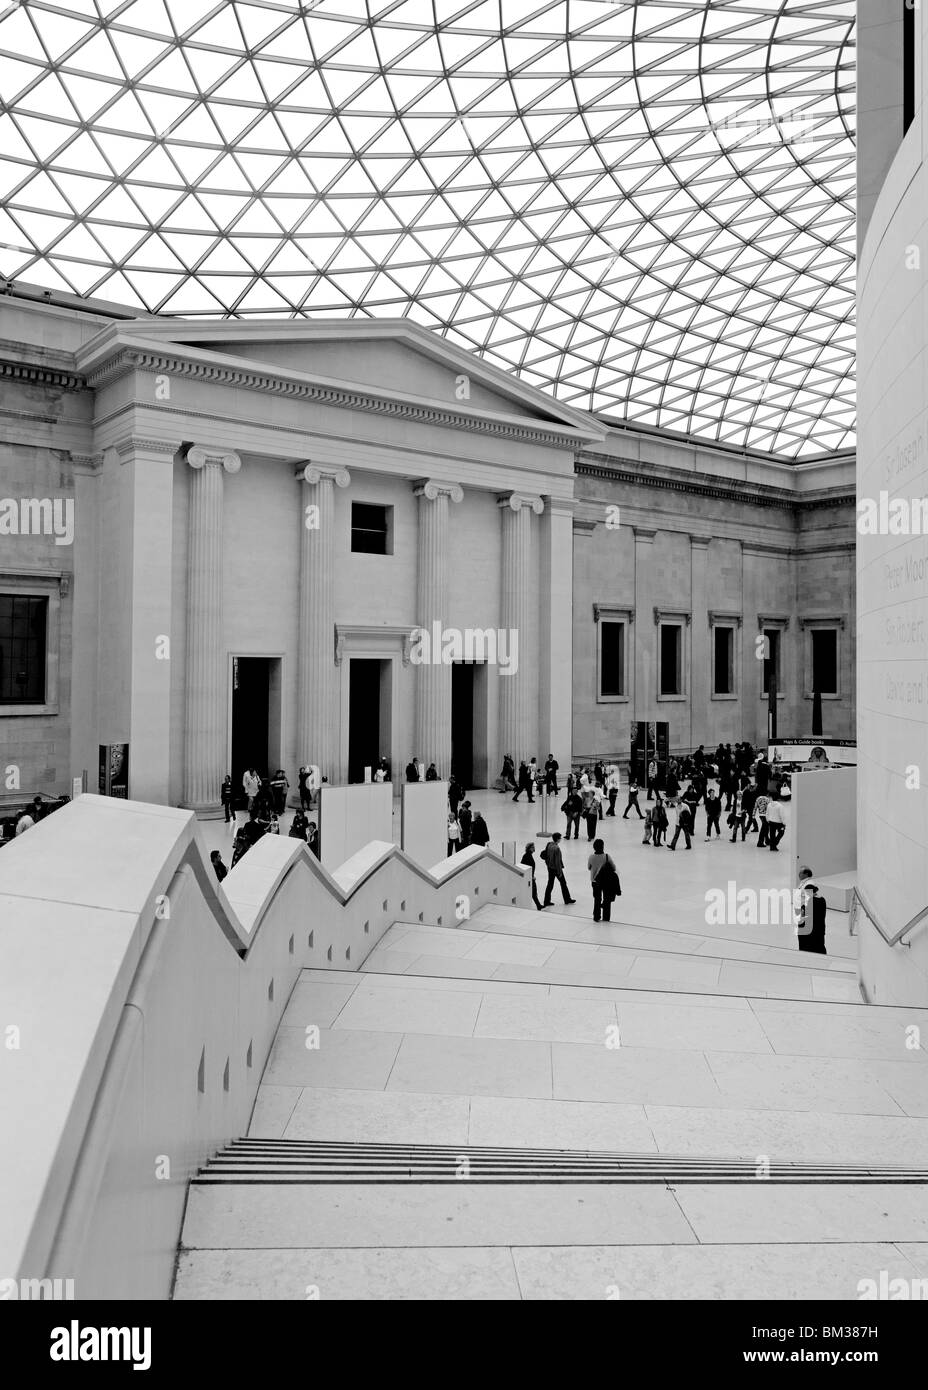 British Museum (Schuss auf eine Hasselblad H3DII-50, Herstellung von 140 MB + TIFF-Datei, falls erforderlich) Stockfoto